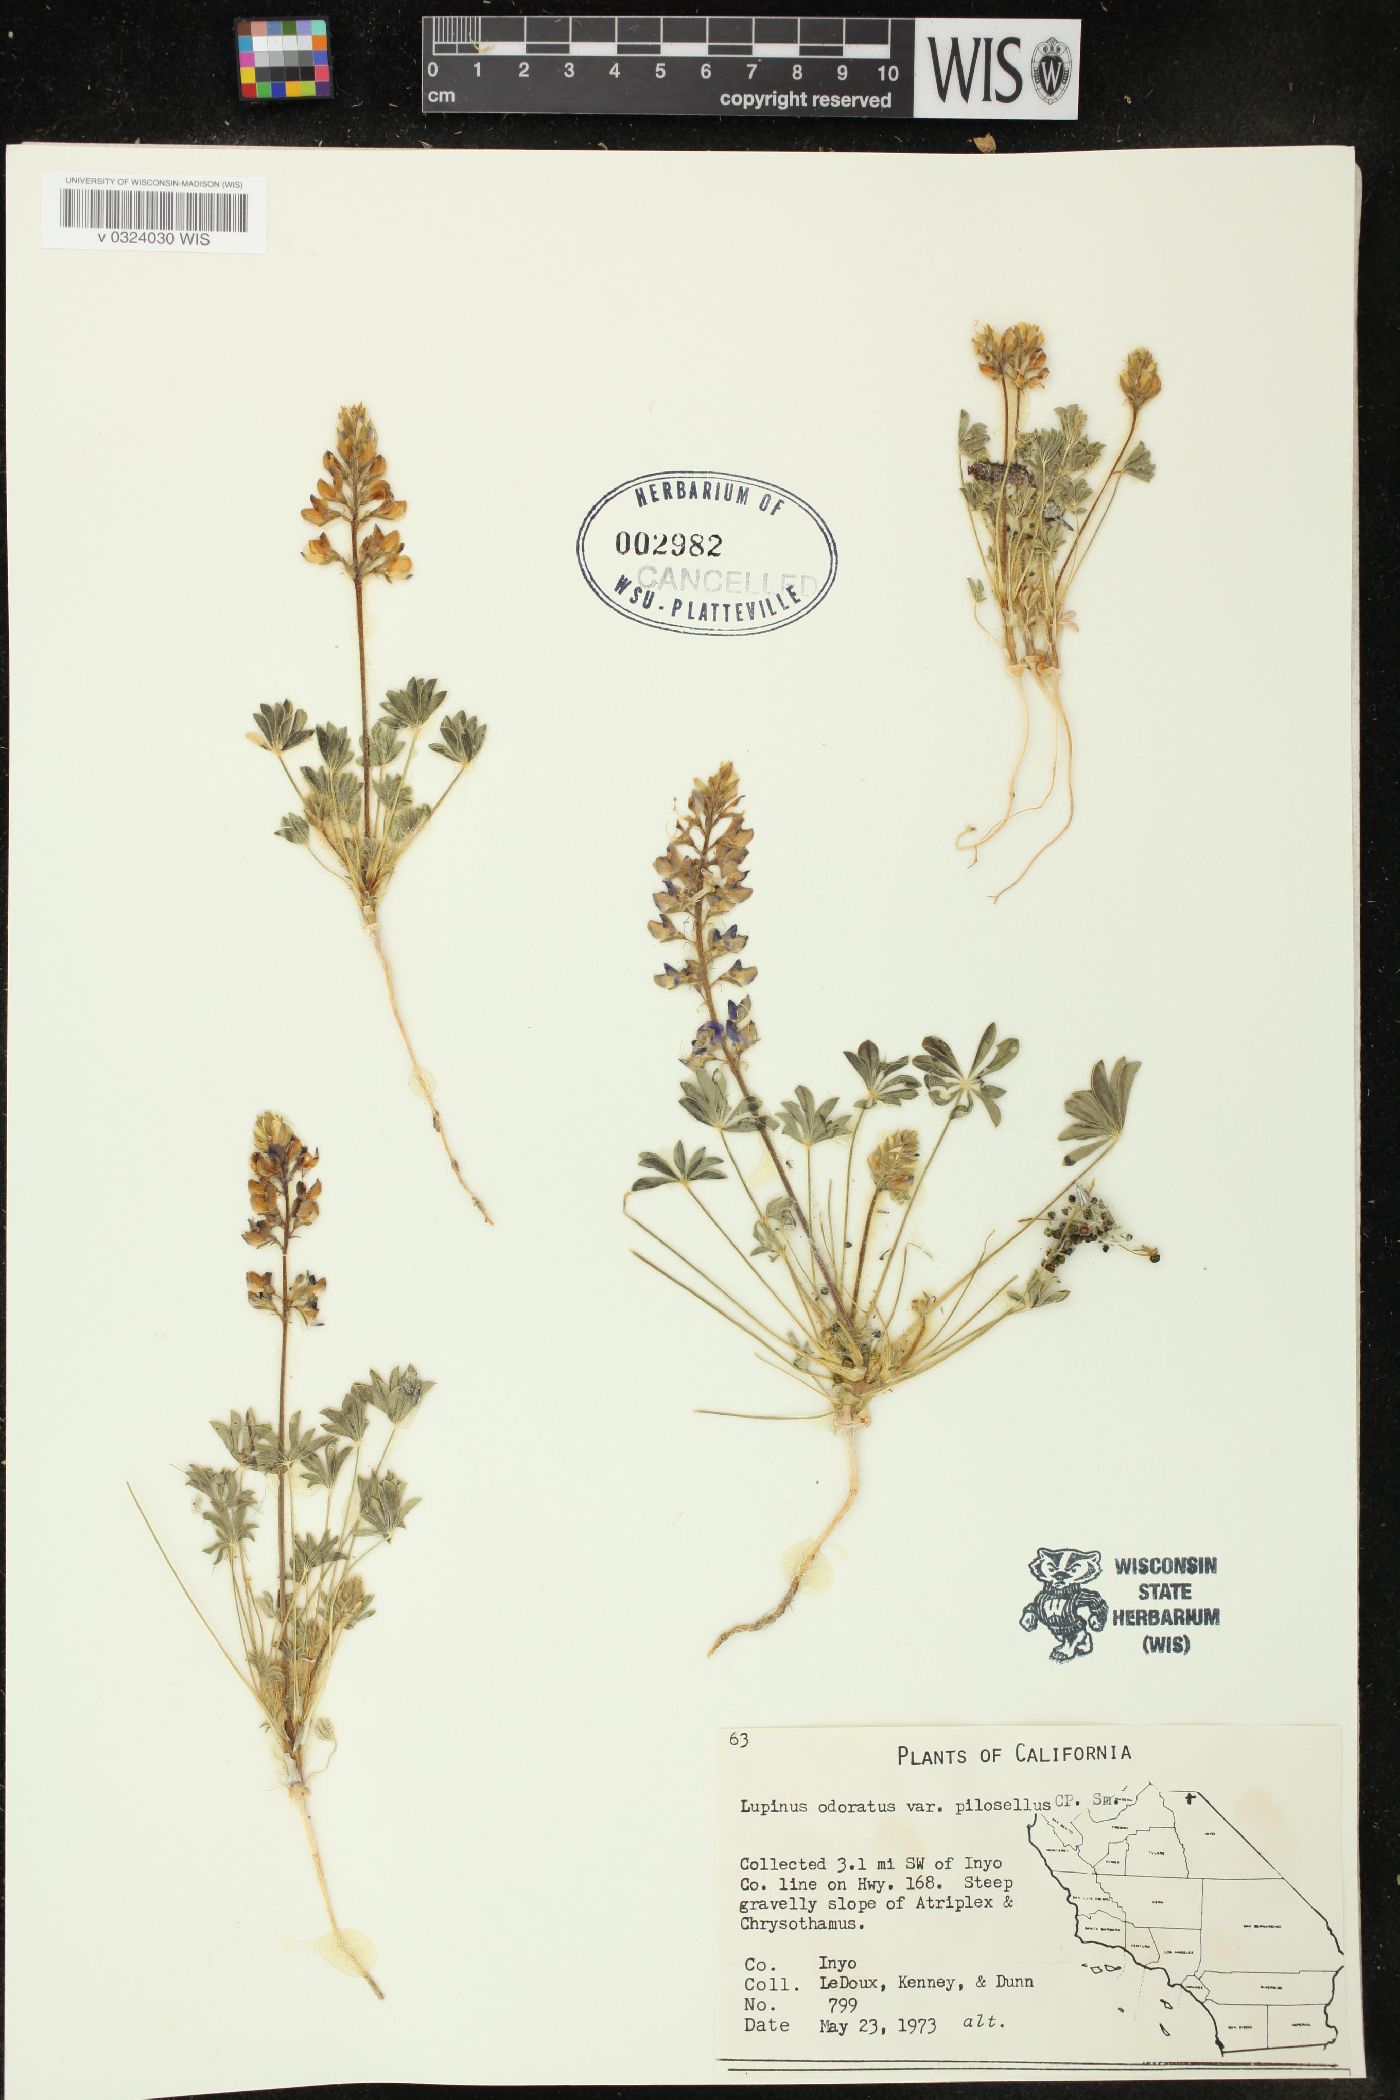 Lupinus odoratus var. pilosellus image